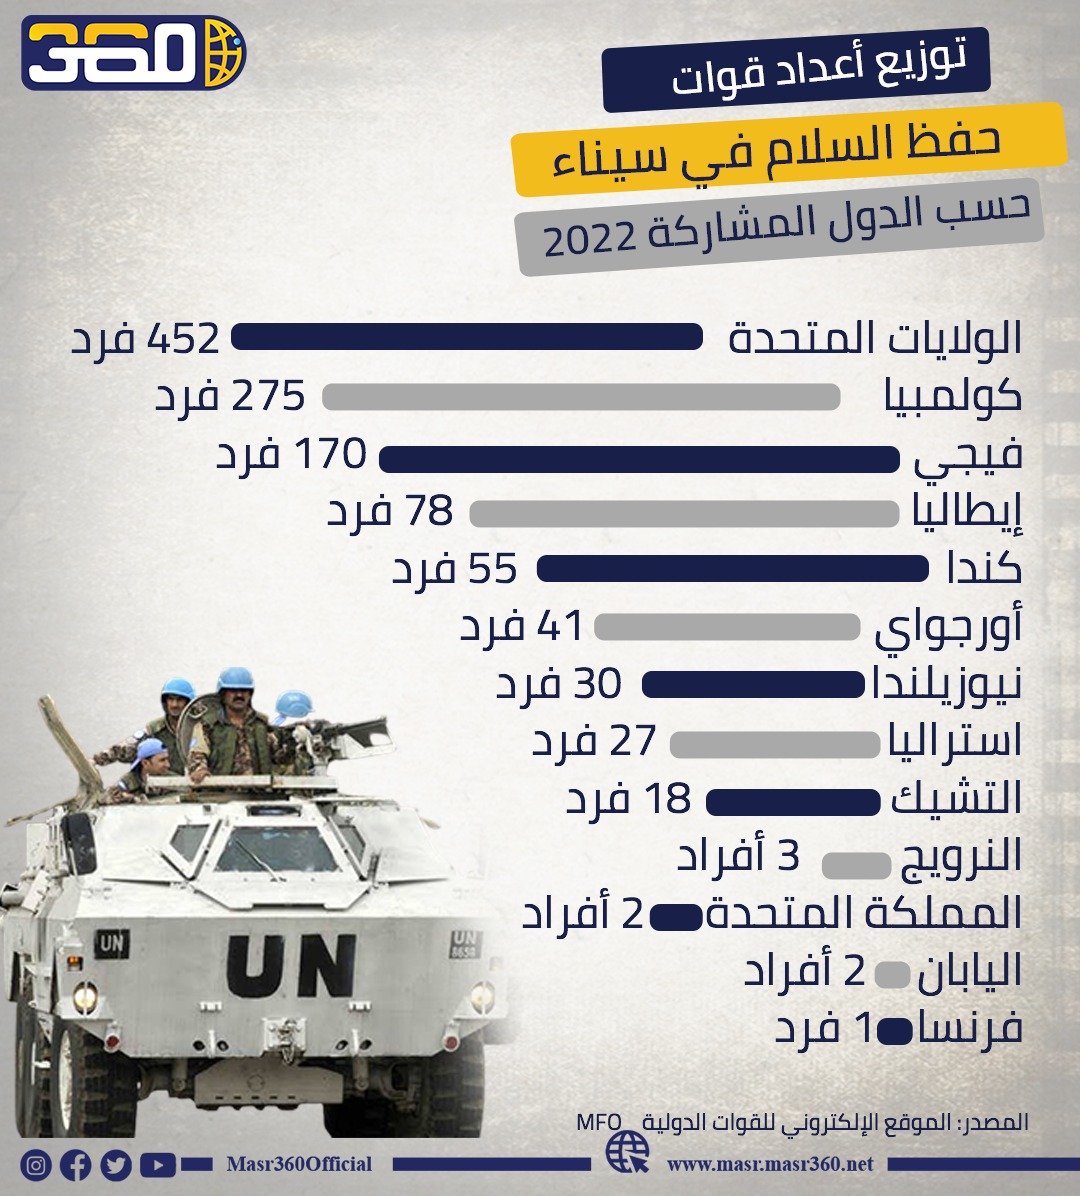 توزيع أعداد قوات حفظ السلام في سيناء حسب الدول المشاركة 2022